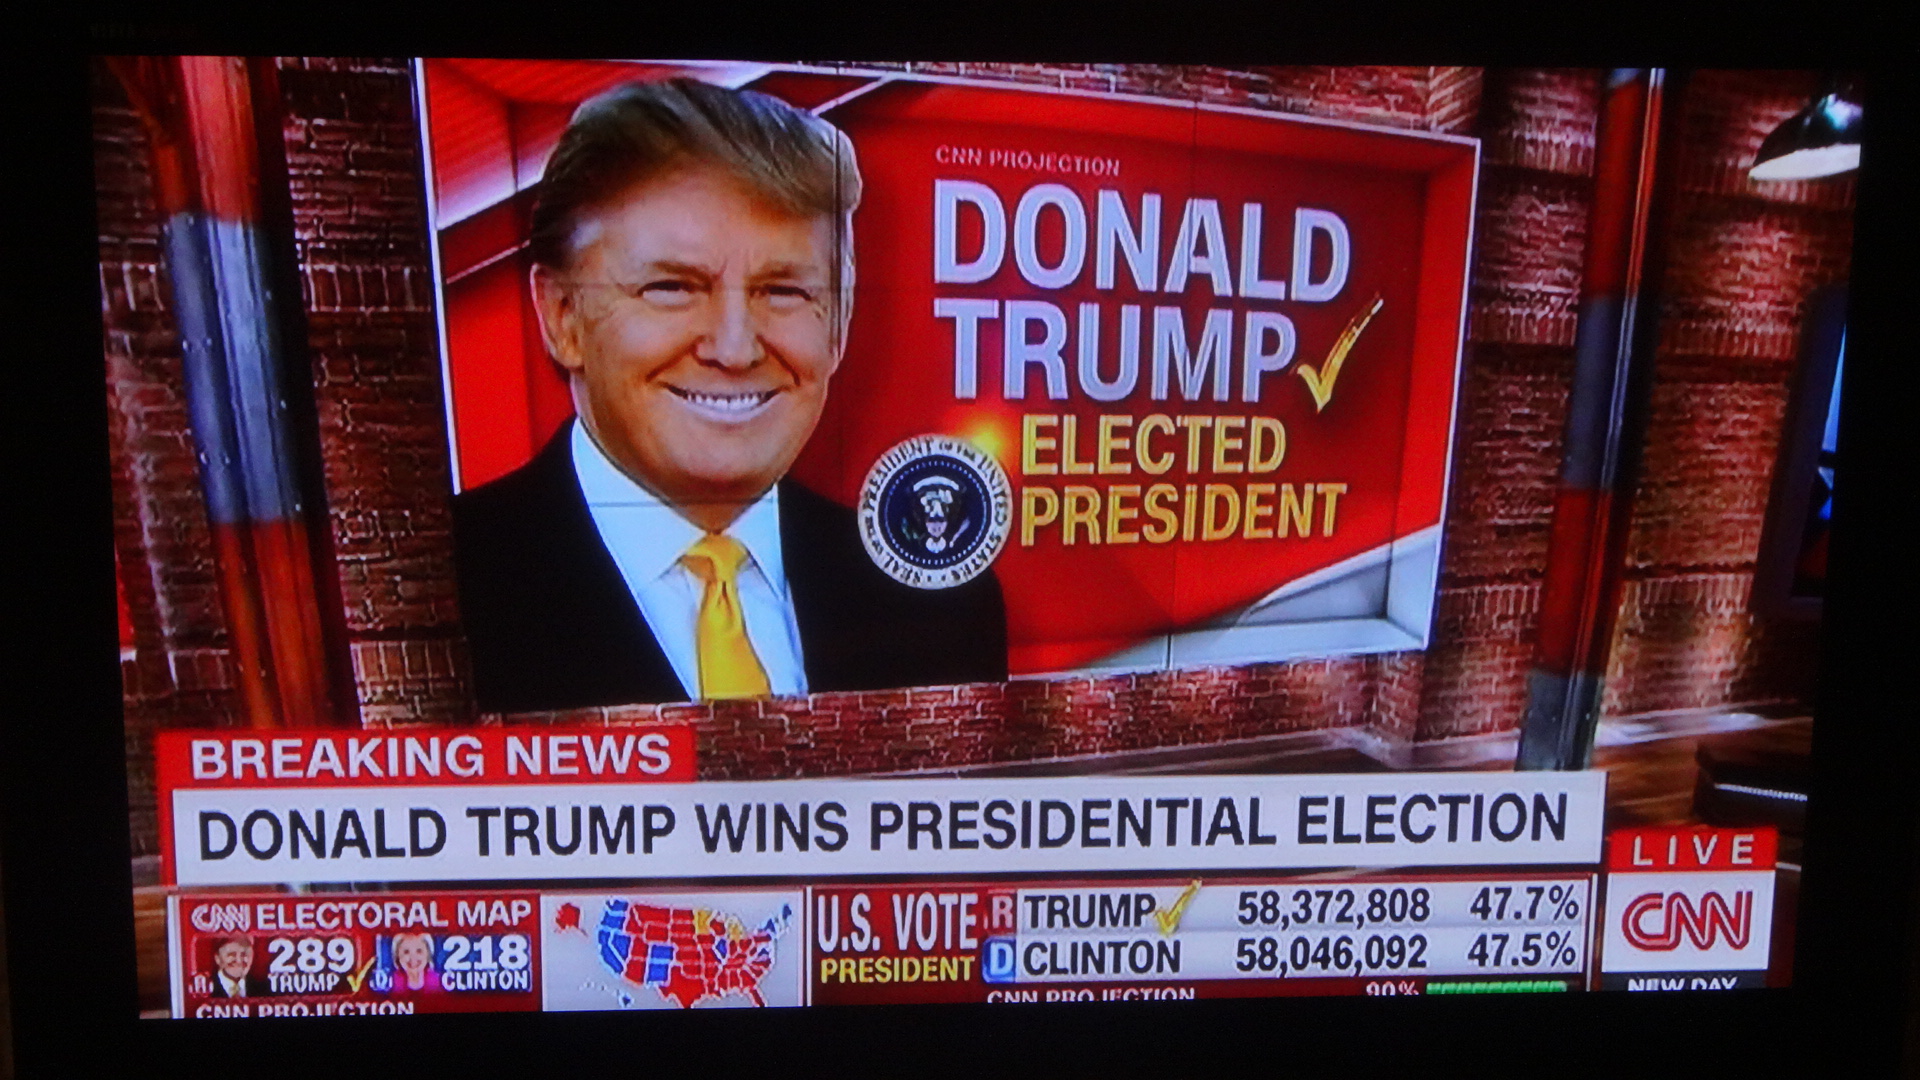 "トランプの大統領選挙勝利を伝えるテレビ放送